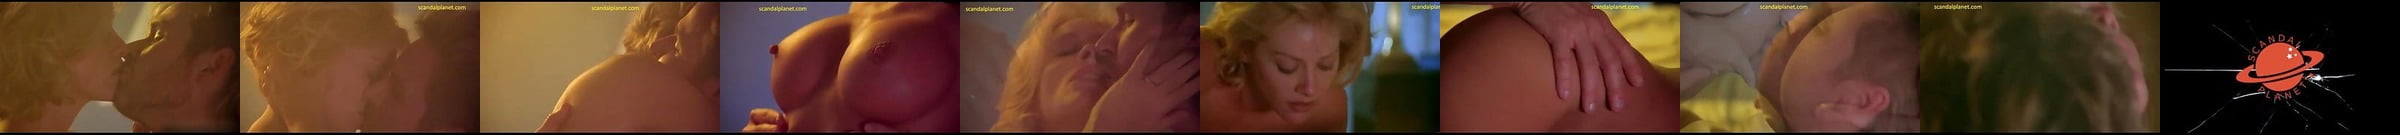 Carrie Stevens Sex Scene In Jane Street Scandalplanet